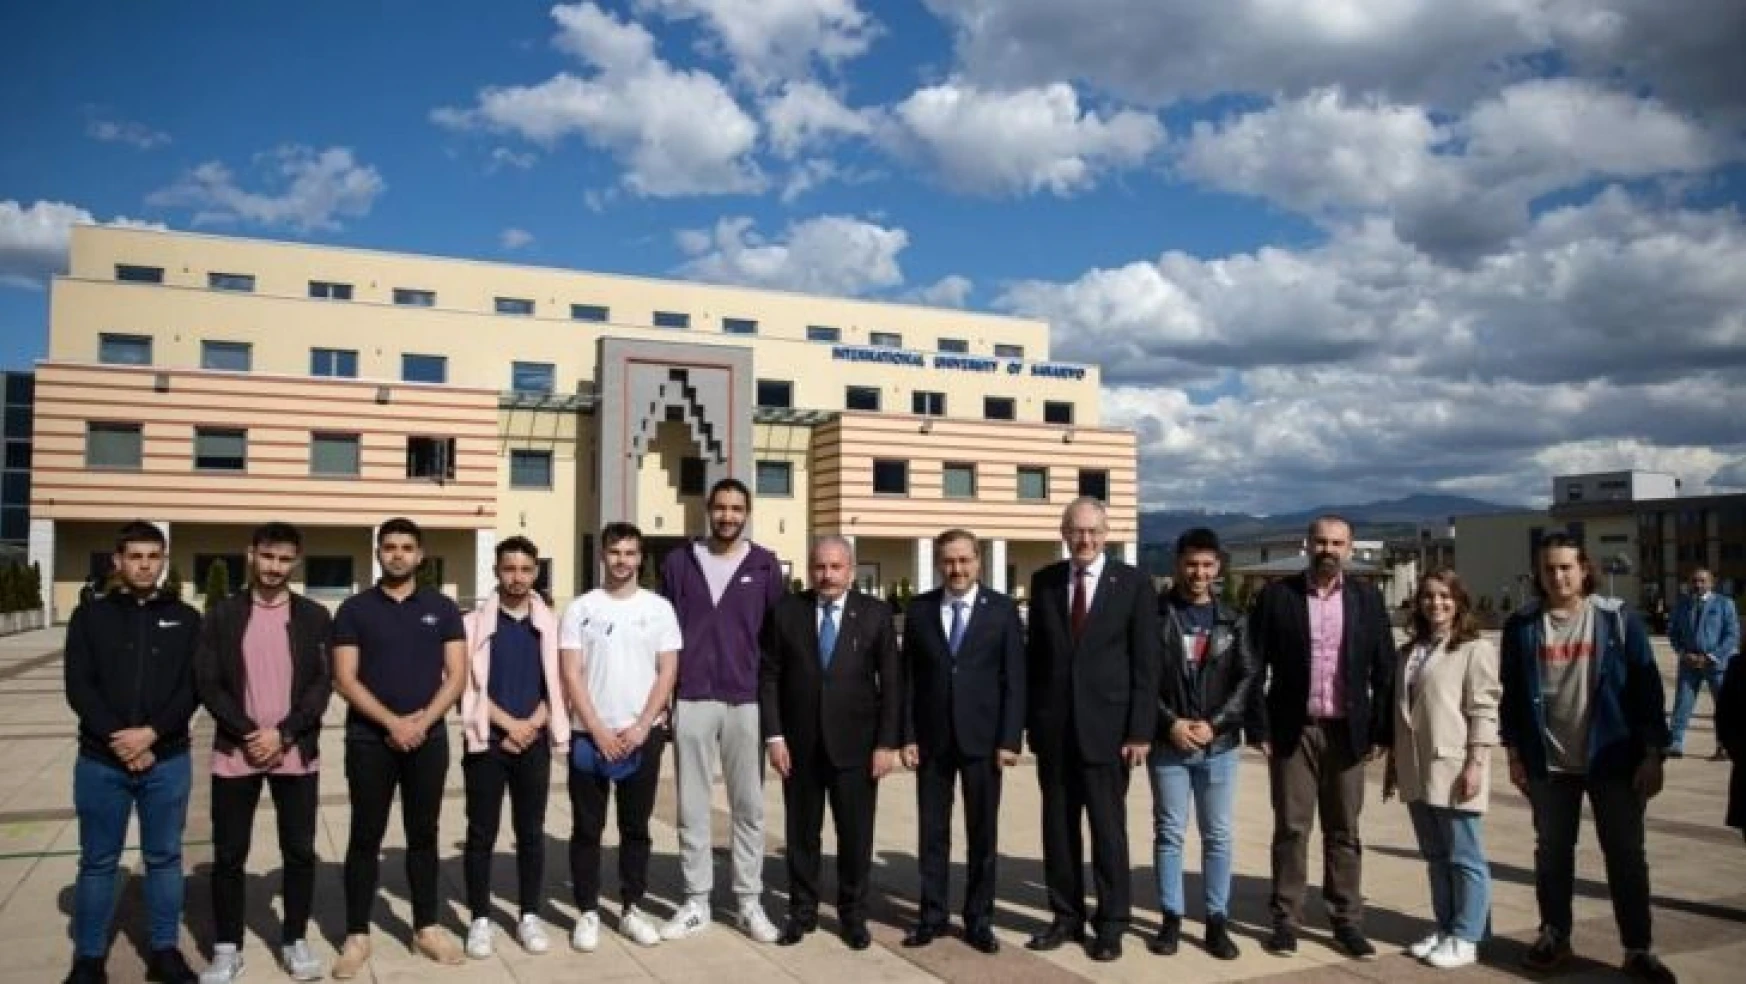 TBMM Başkanı Şentop Uluslararası Saraybosna Üniversitesi'ni ziyaret etti